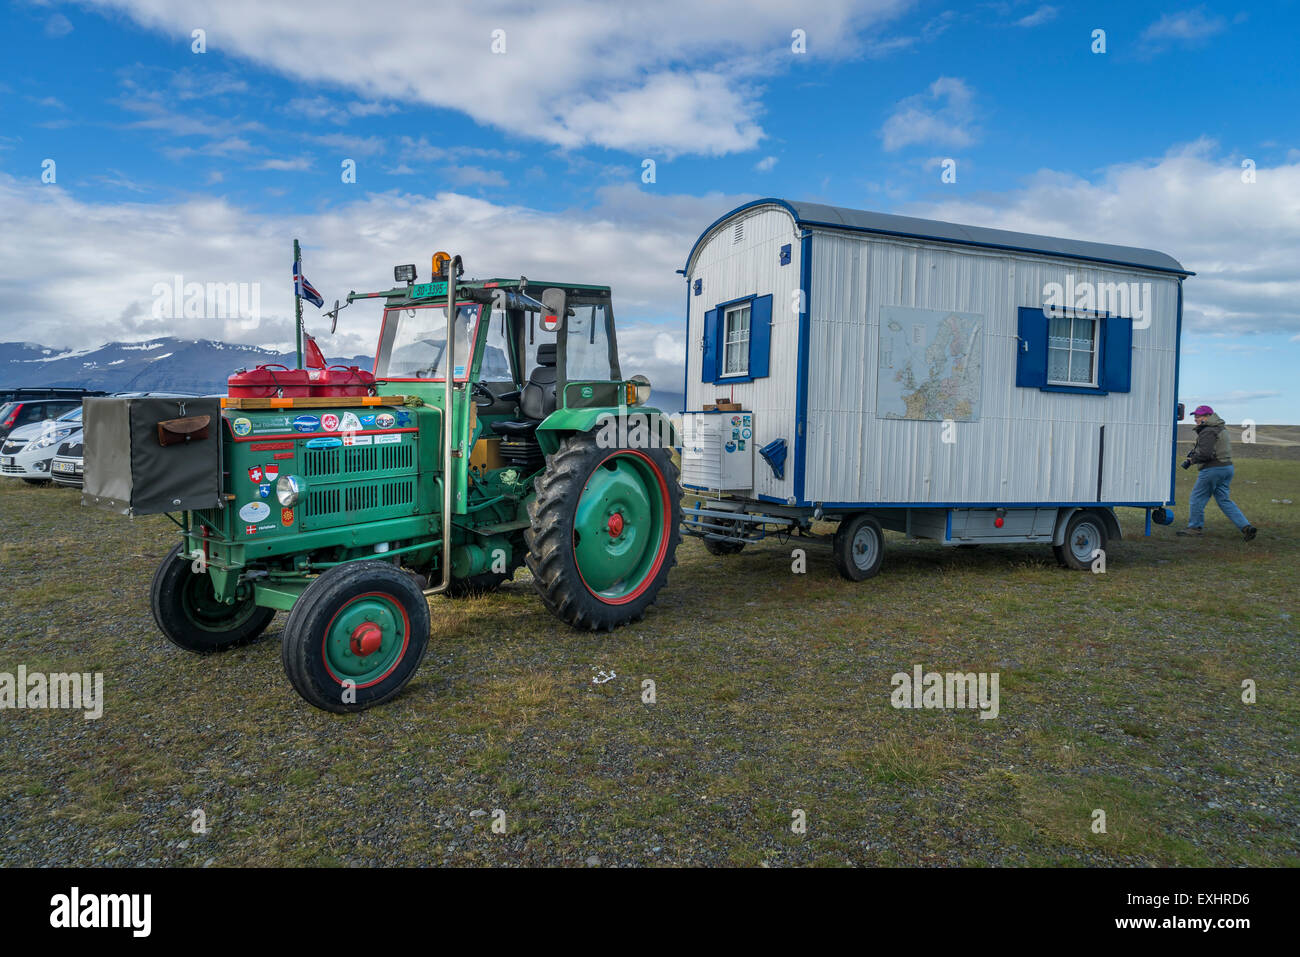 Hausgemachte Karawane von einem landwirtschaftlichen Traktor gezogen, auf dem Parkplatz der Gletschersee Jökulsárlón Gletscherlagune, Island Stockfoto